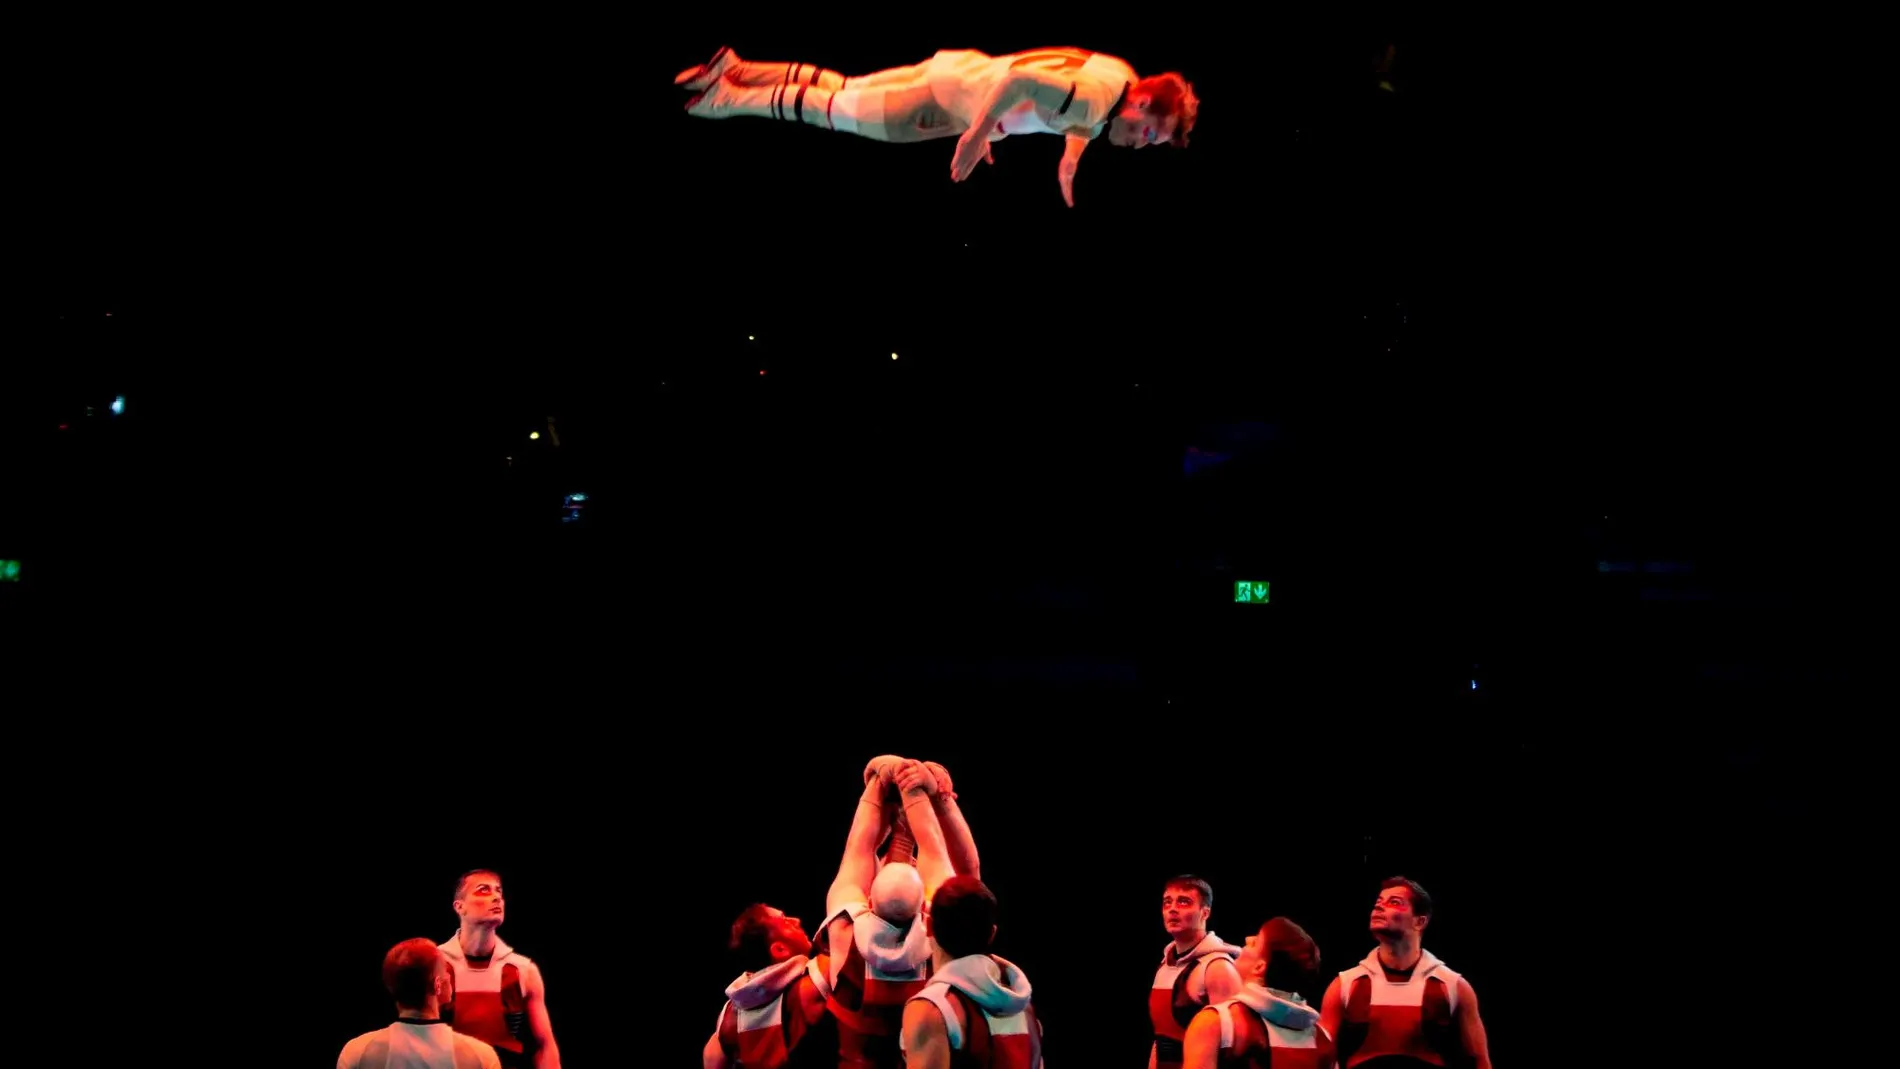 GRAFCAT4472. BARCELONA, 03/10/2019.-El Cirque du Soleil ha presentado este jueves su nuevo espectáculo "Messi10", inspirado en la figura y valores del astro argentino Leo Messi, que tendrá su estreno mundial en Barcelona la próxima semana.